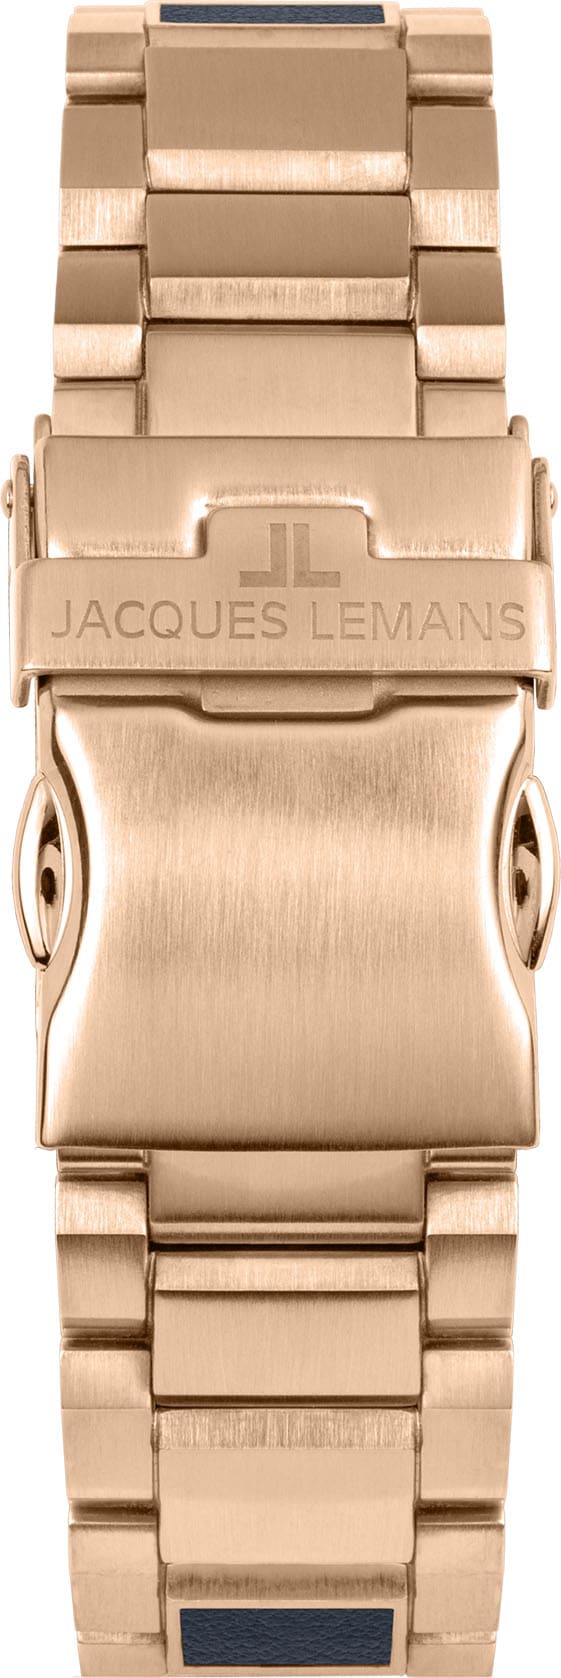 Jacques Lemans Solaruhr »Eco Power, 1-2116F«